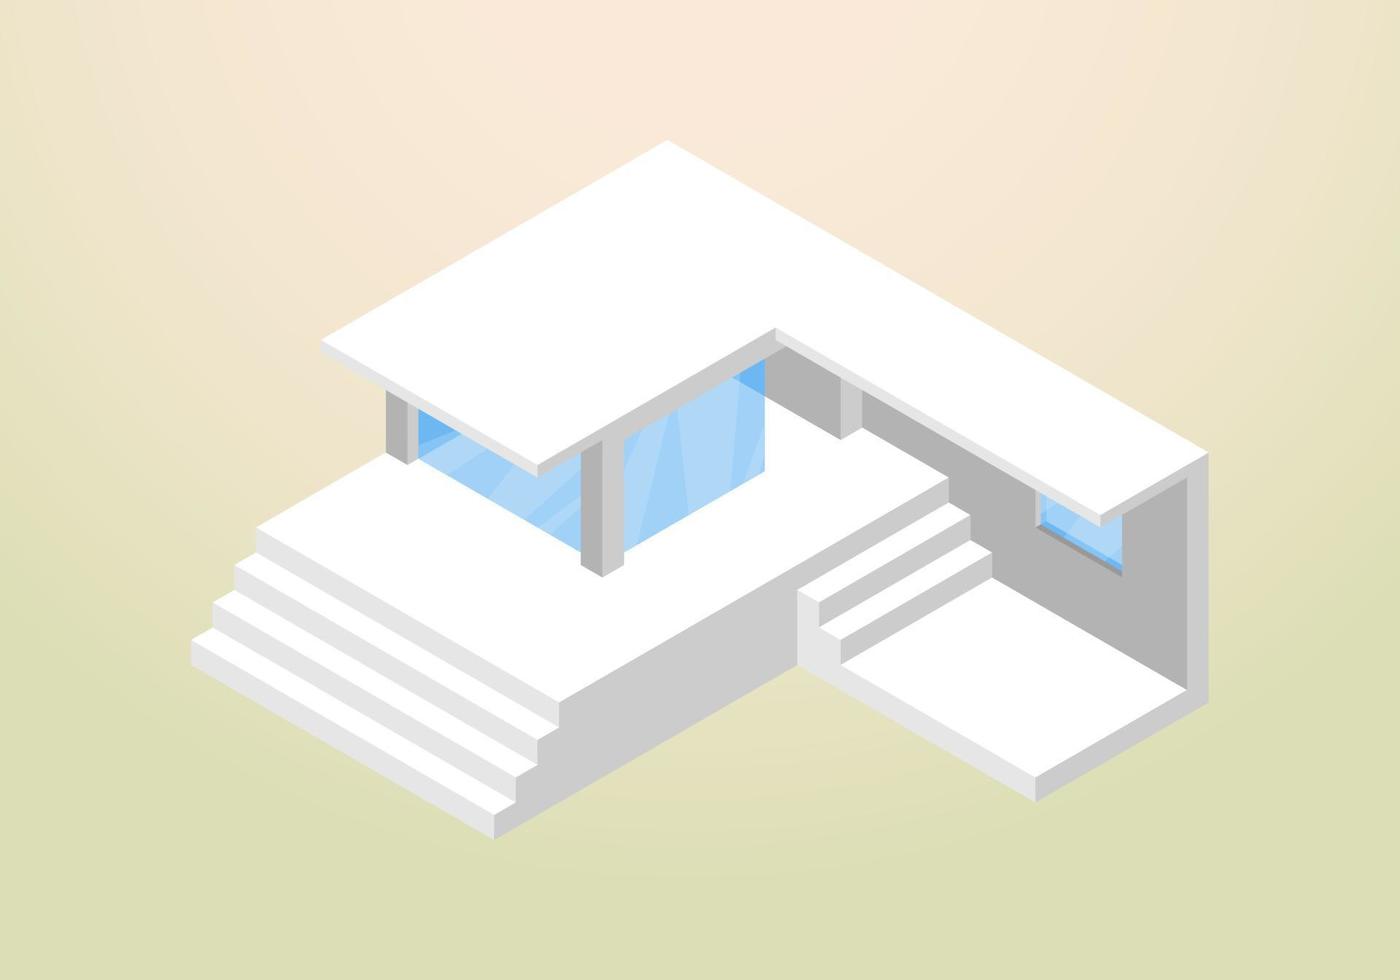 isometrisch ontwerp van moderne en minimalistische huisvectorsjabloon vector